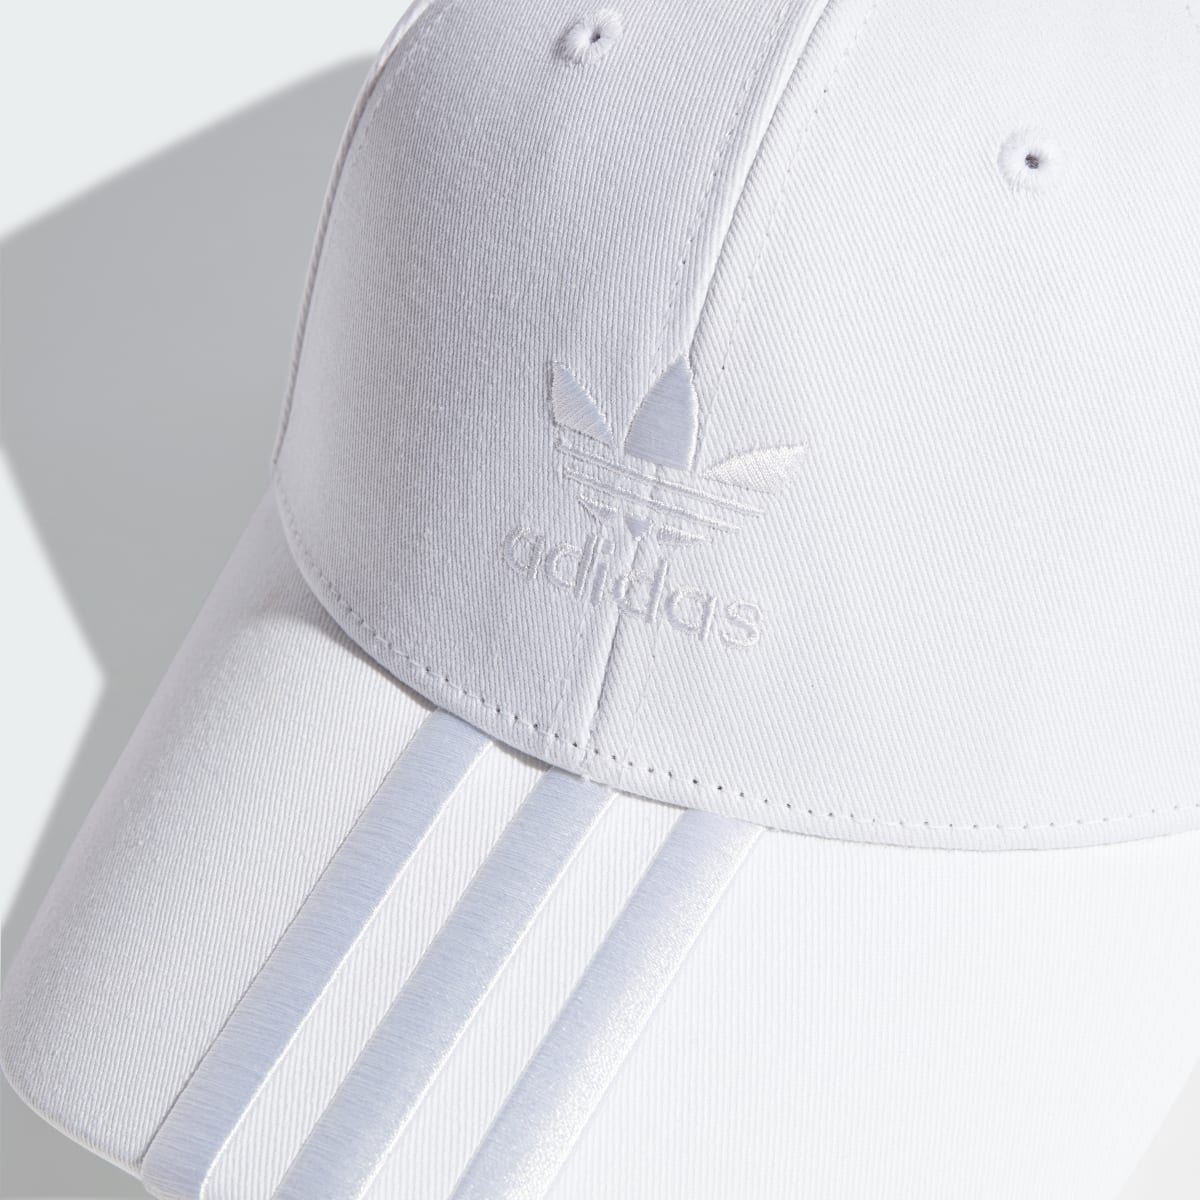 Adidas Cap. 4